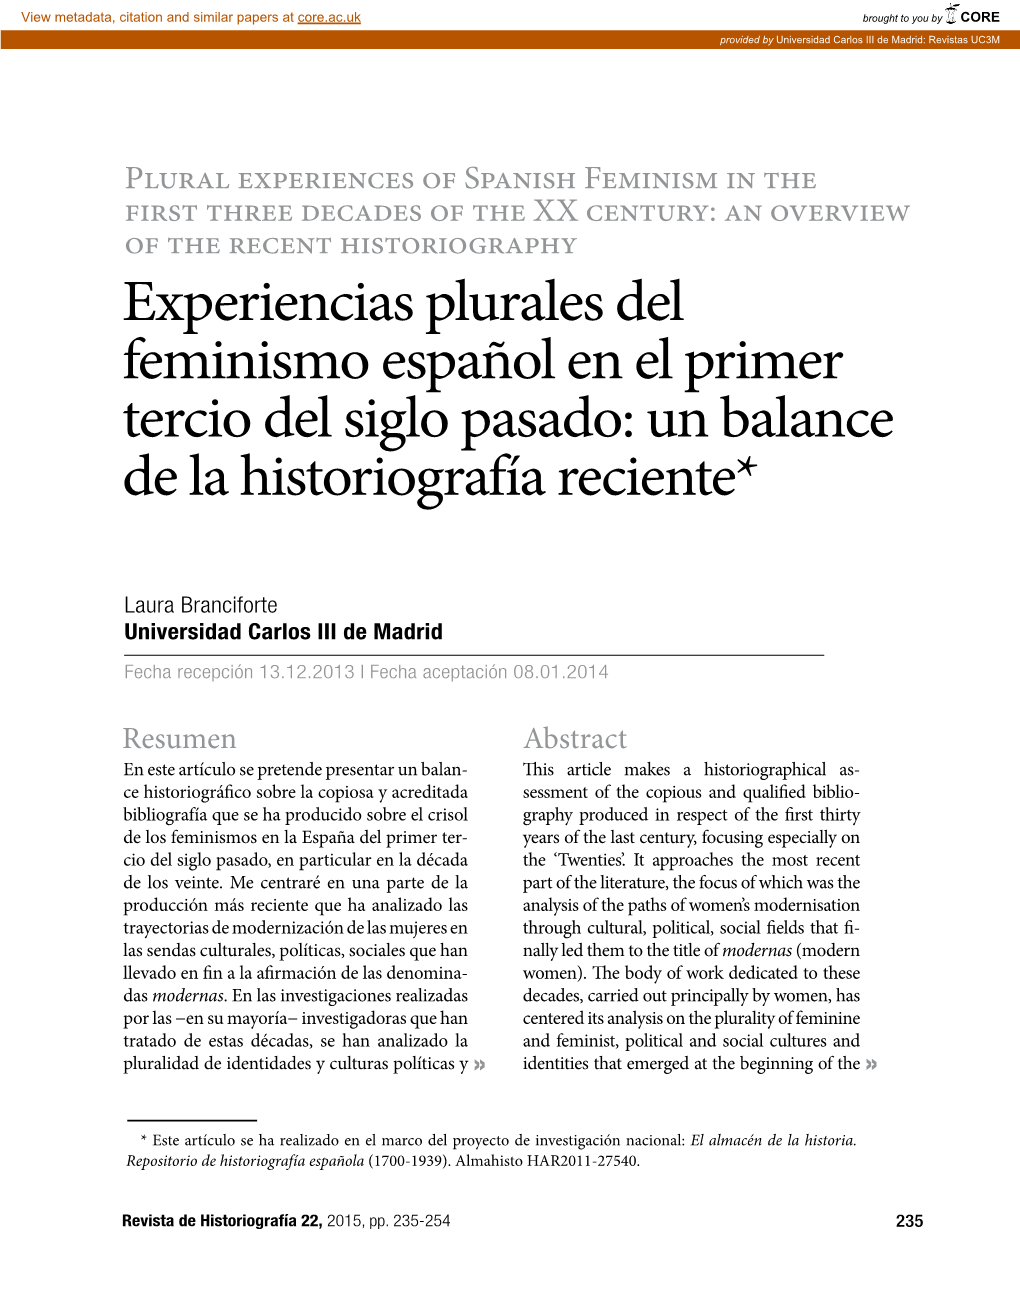 Experiencias Plurales Del Feminismo Español En El Primer Tercio Del Siglo Pasado: Un Balance De La Historiografía Reciente*